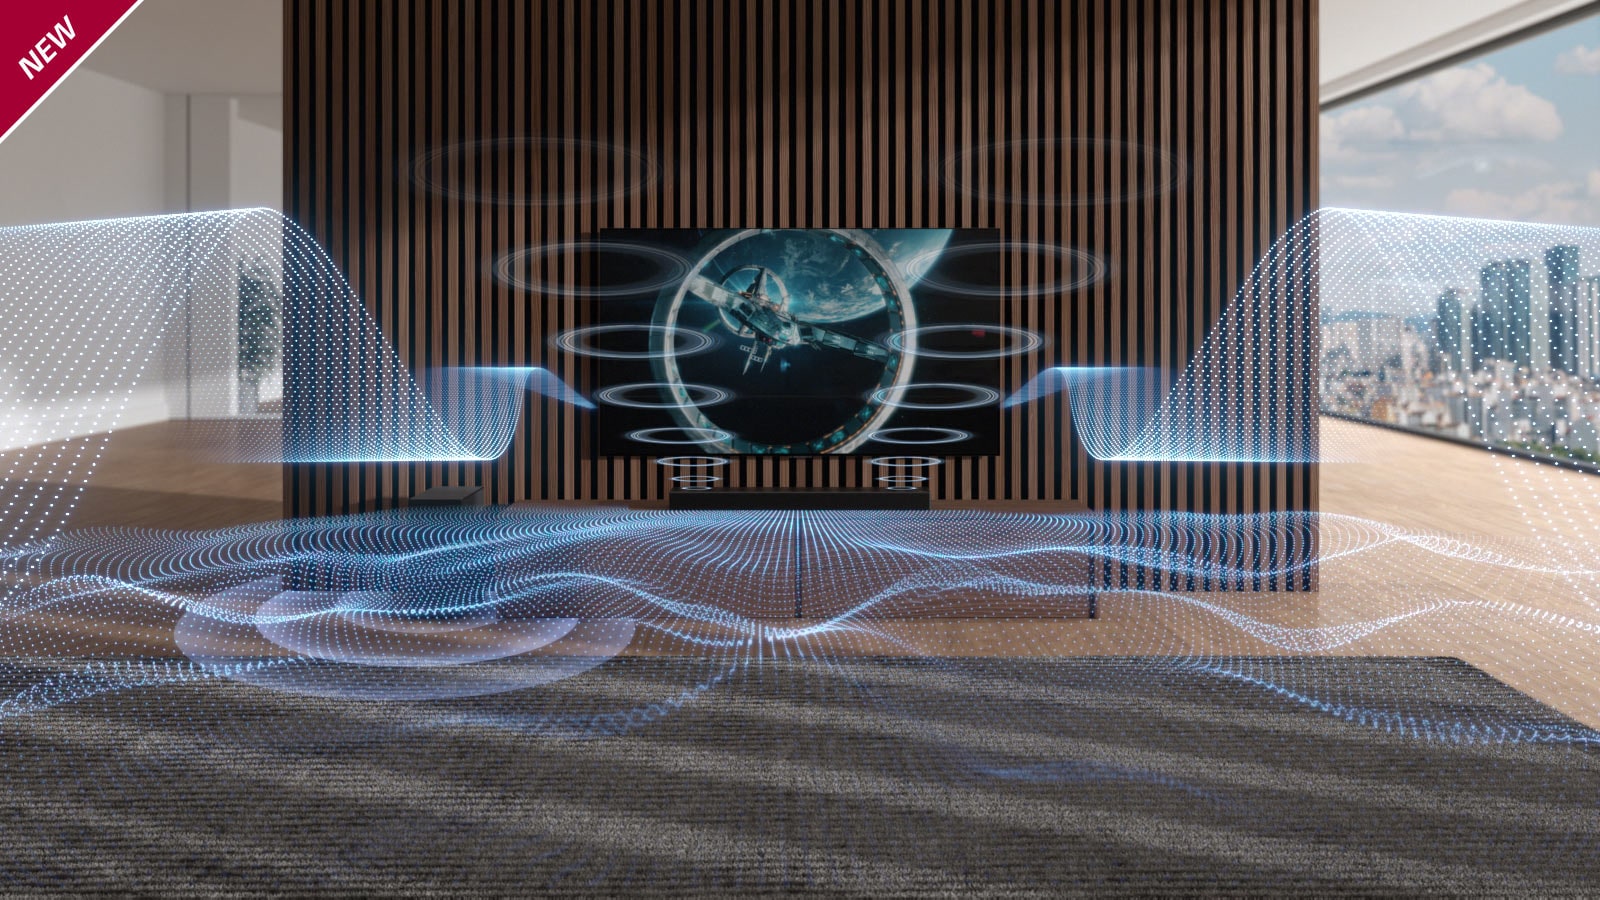 Različito oblikovani plavi zvučni talasi izlaze iz Sound Bar zvučnika i televizora. Oznaka NEW prikazana je u gornjem levom uglu.